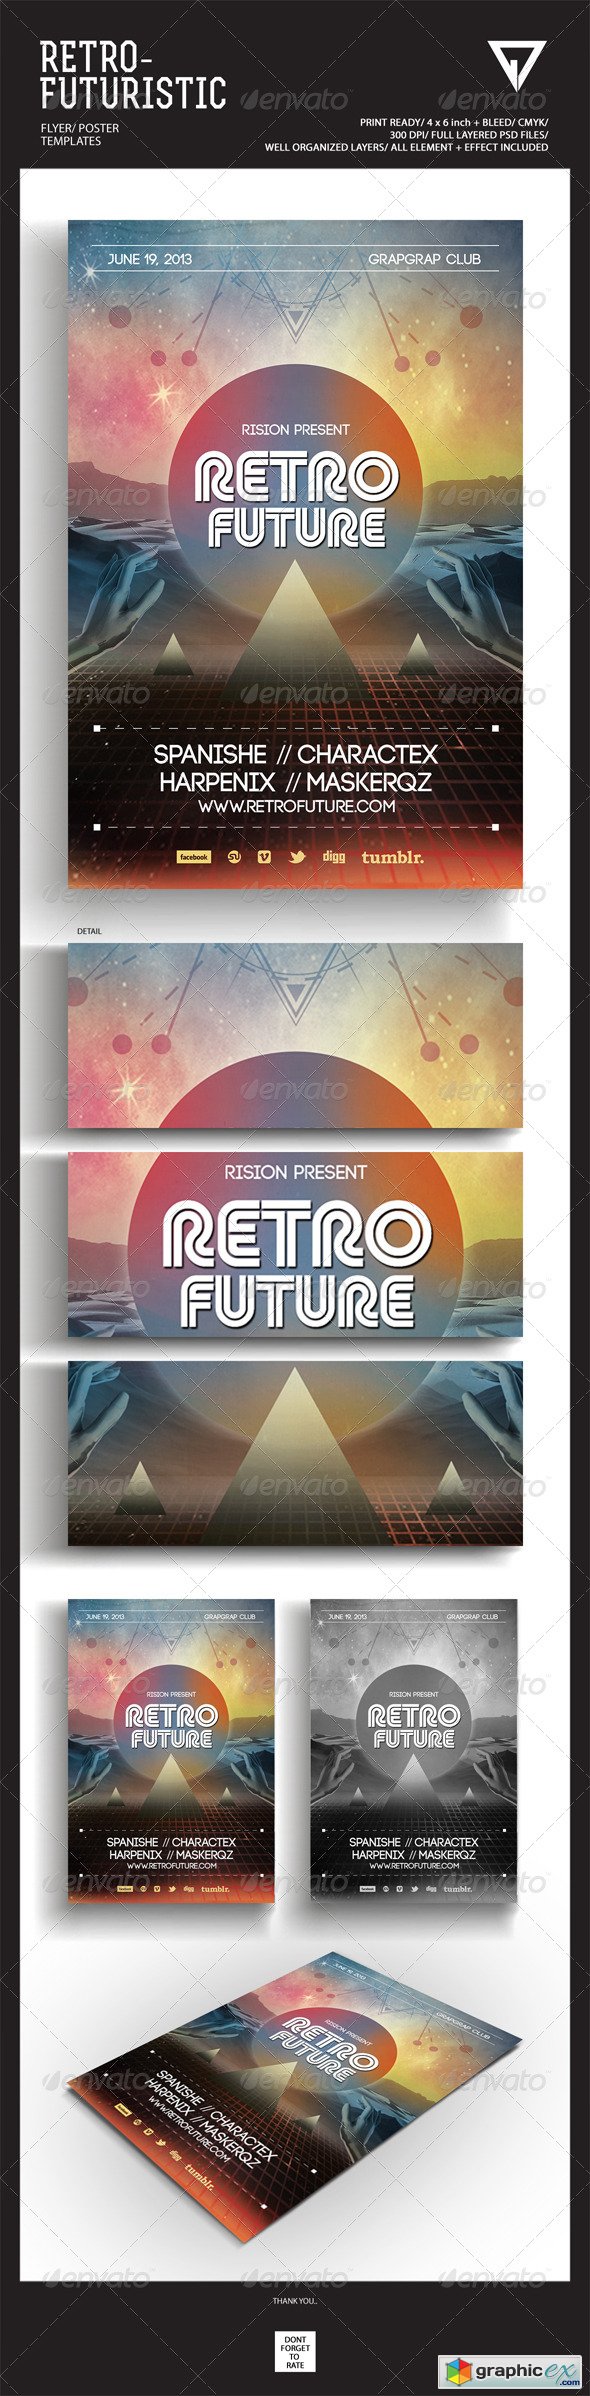 Retro Futuristic Flyer/Poster 4692537